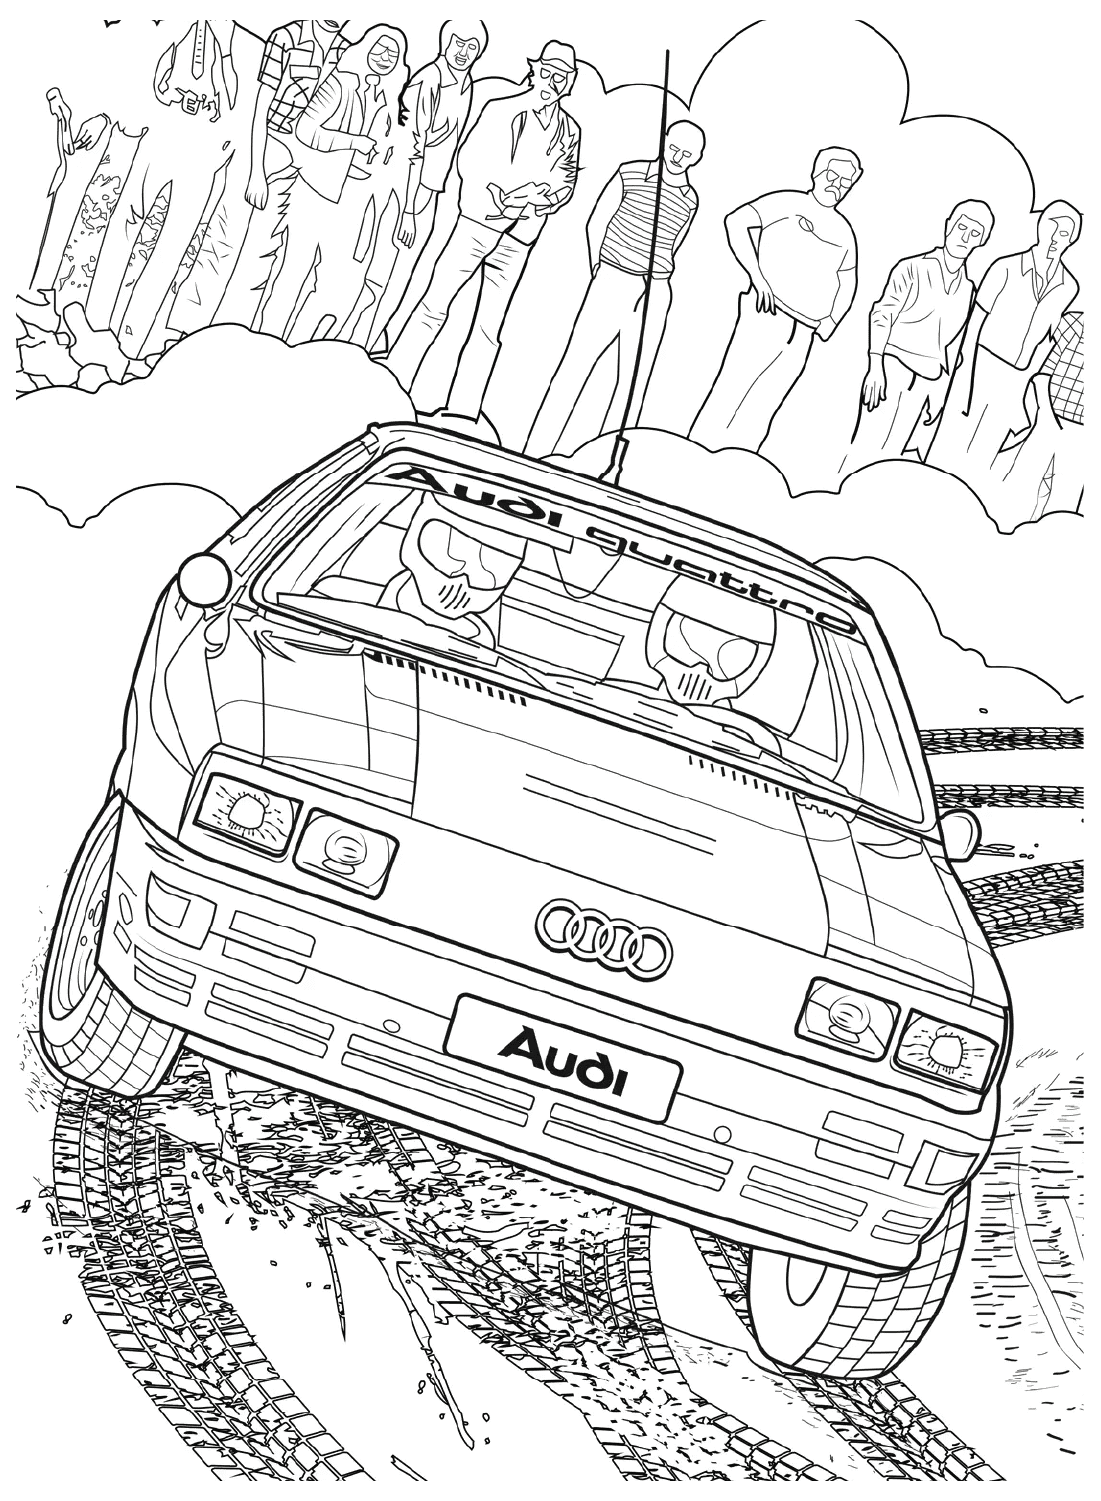 Изображения Audi в цвете из Audi